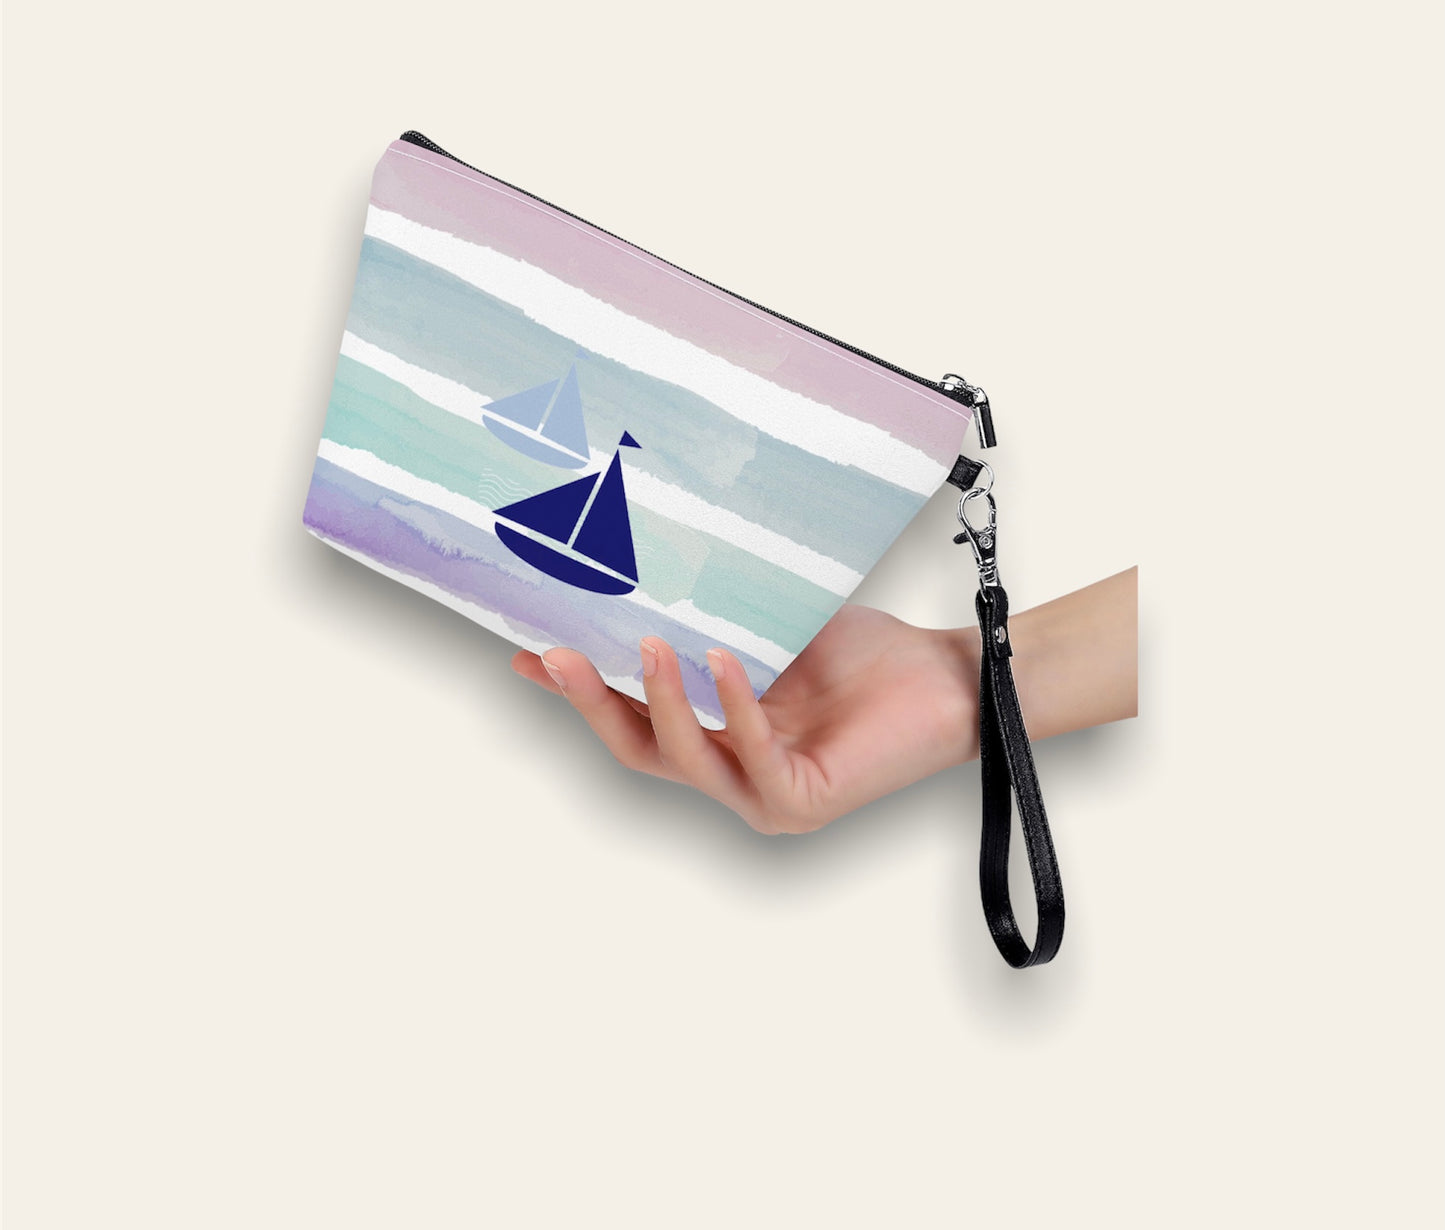 Blue Sailboats -  Dinghy Bag